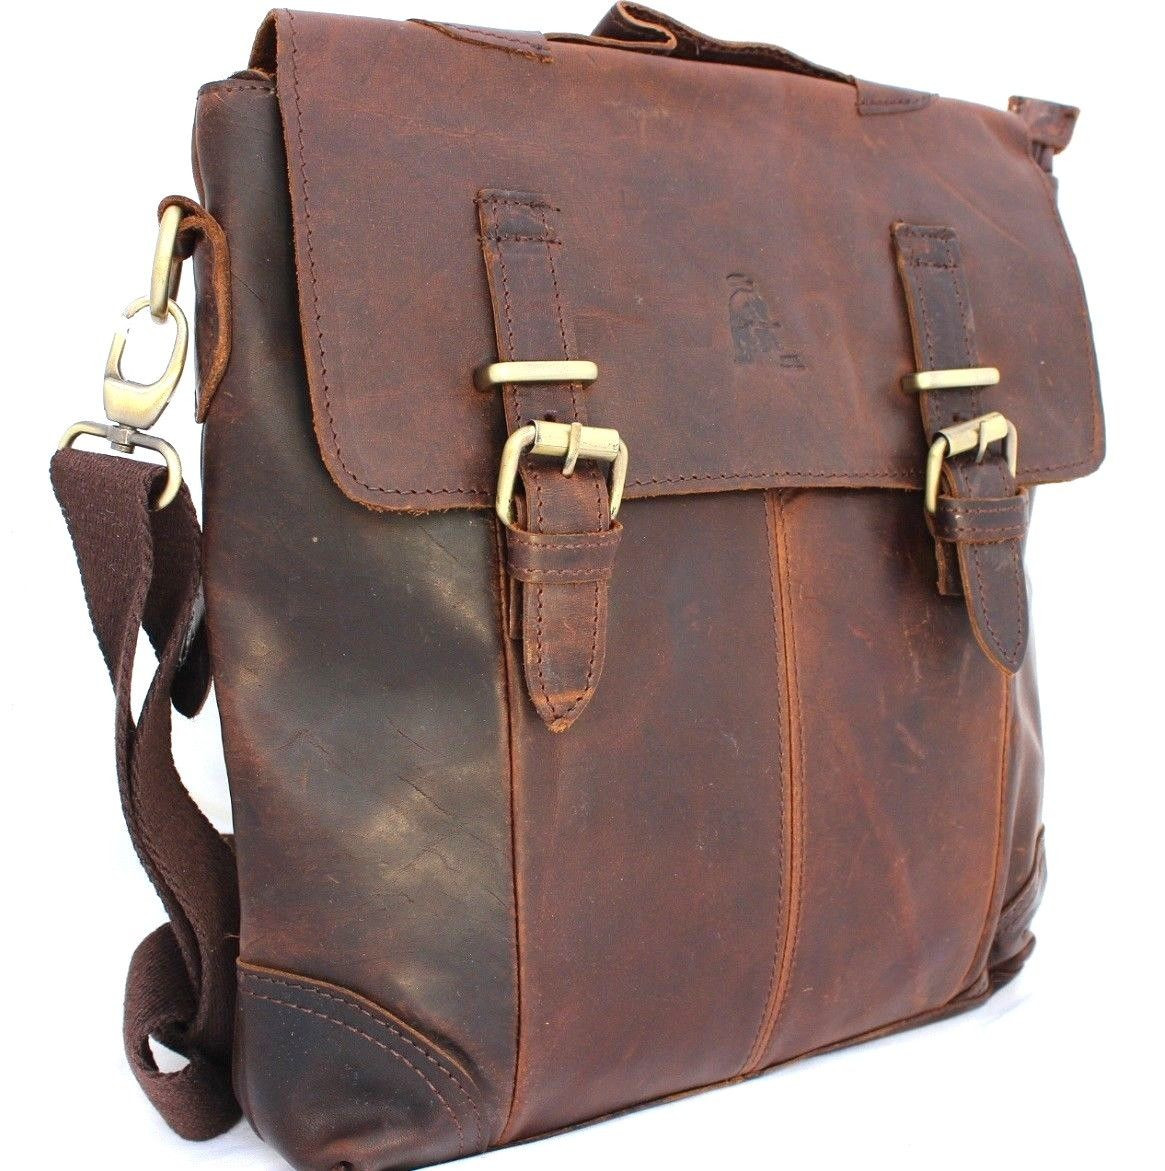 Genuine vintage leather men messenger shoulder bag handbag cowhide tote ...